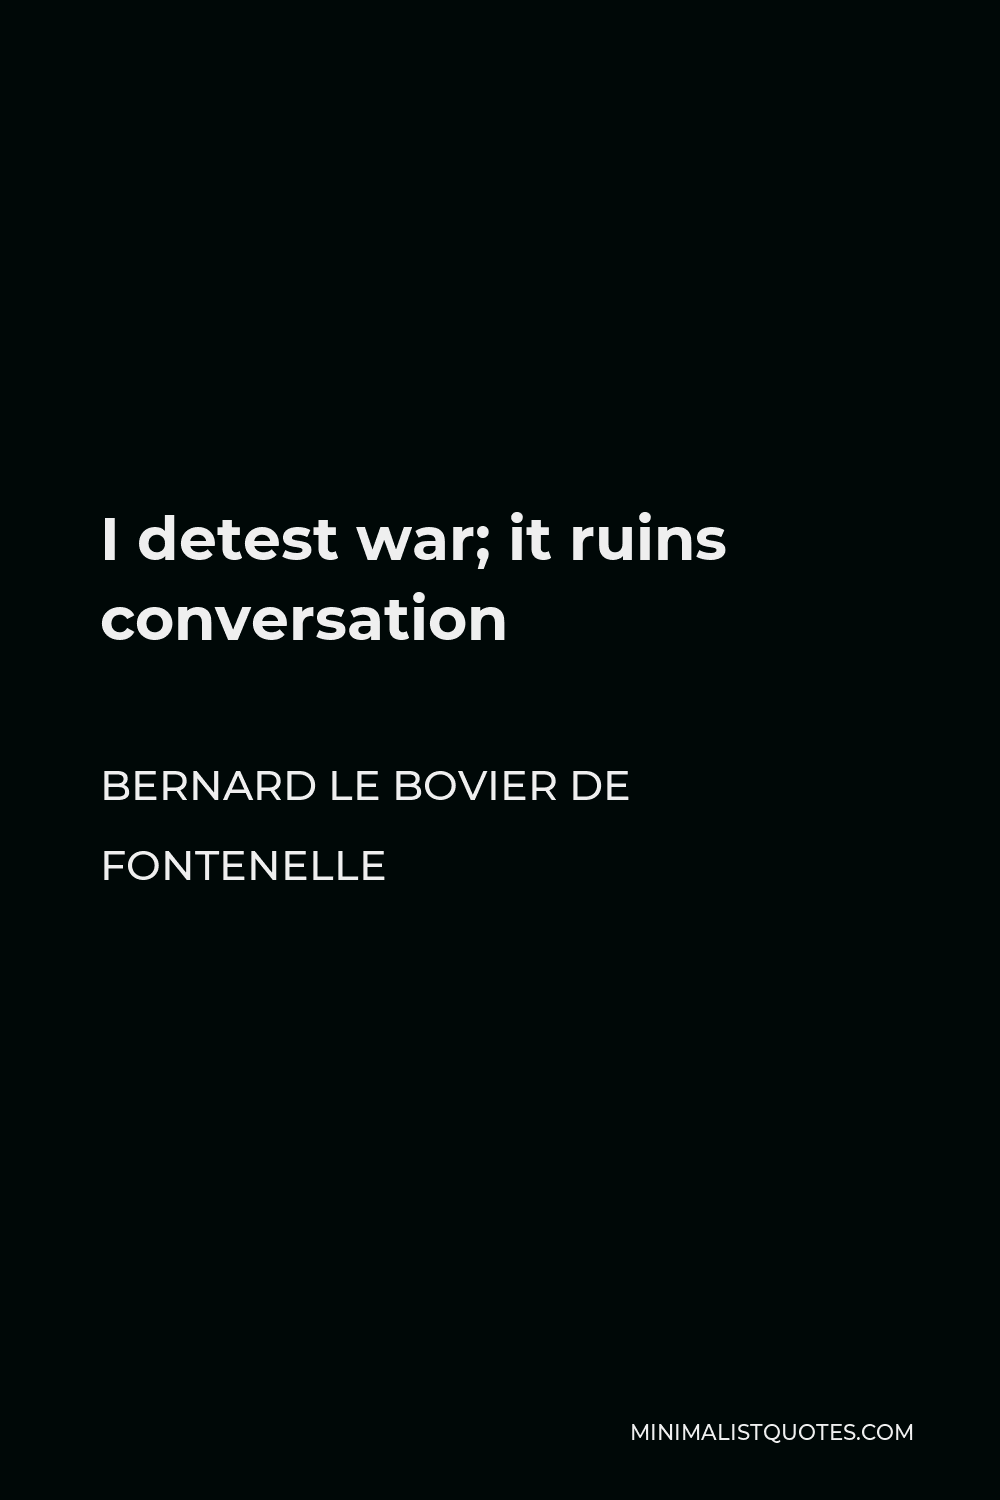 Bernard le Bovier de Fontenelle Quote - I detest war; it ruins conversation